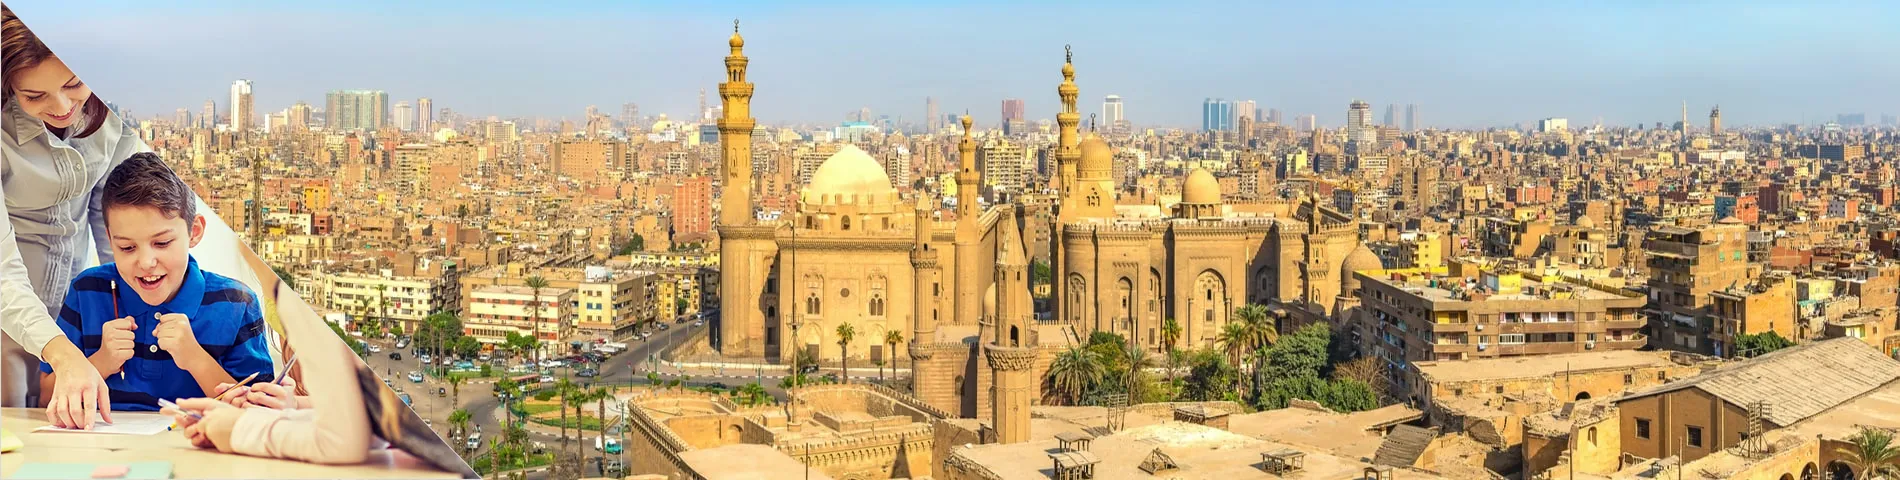 Kairo - Arabisch für Lehrer